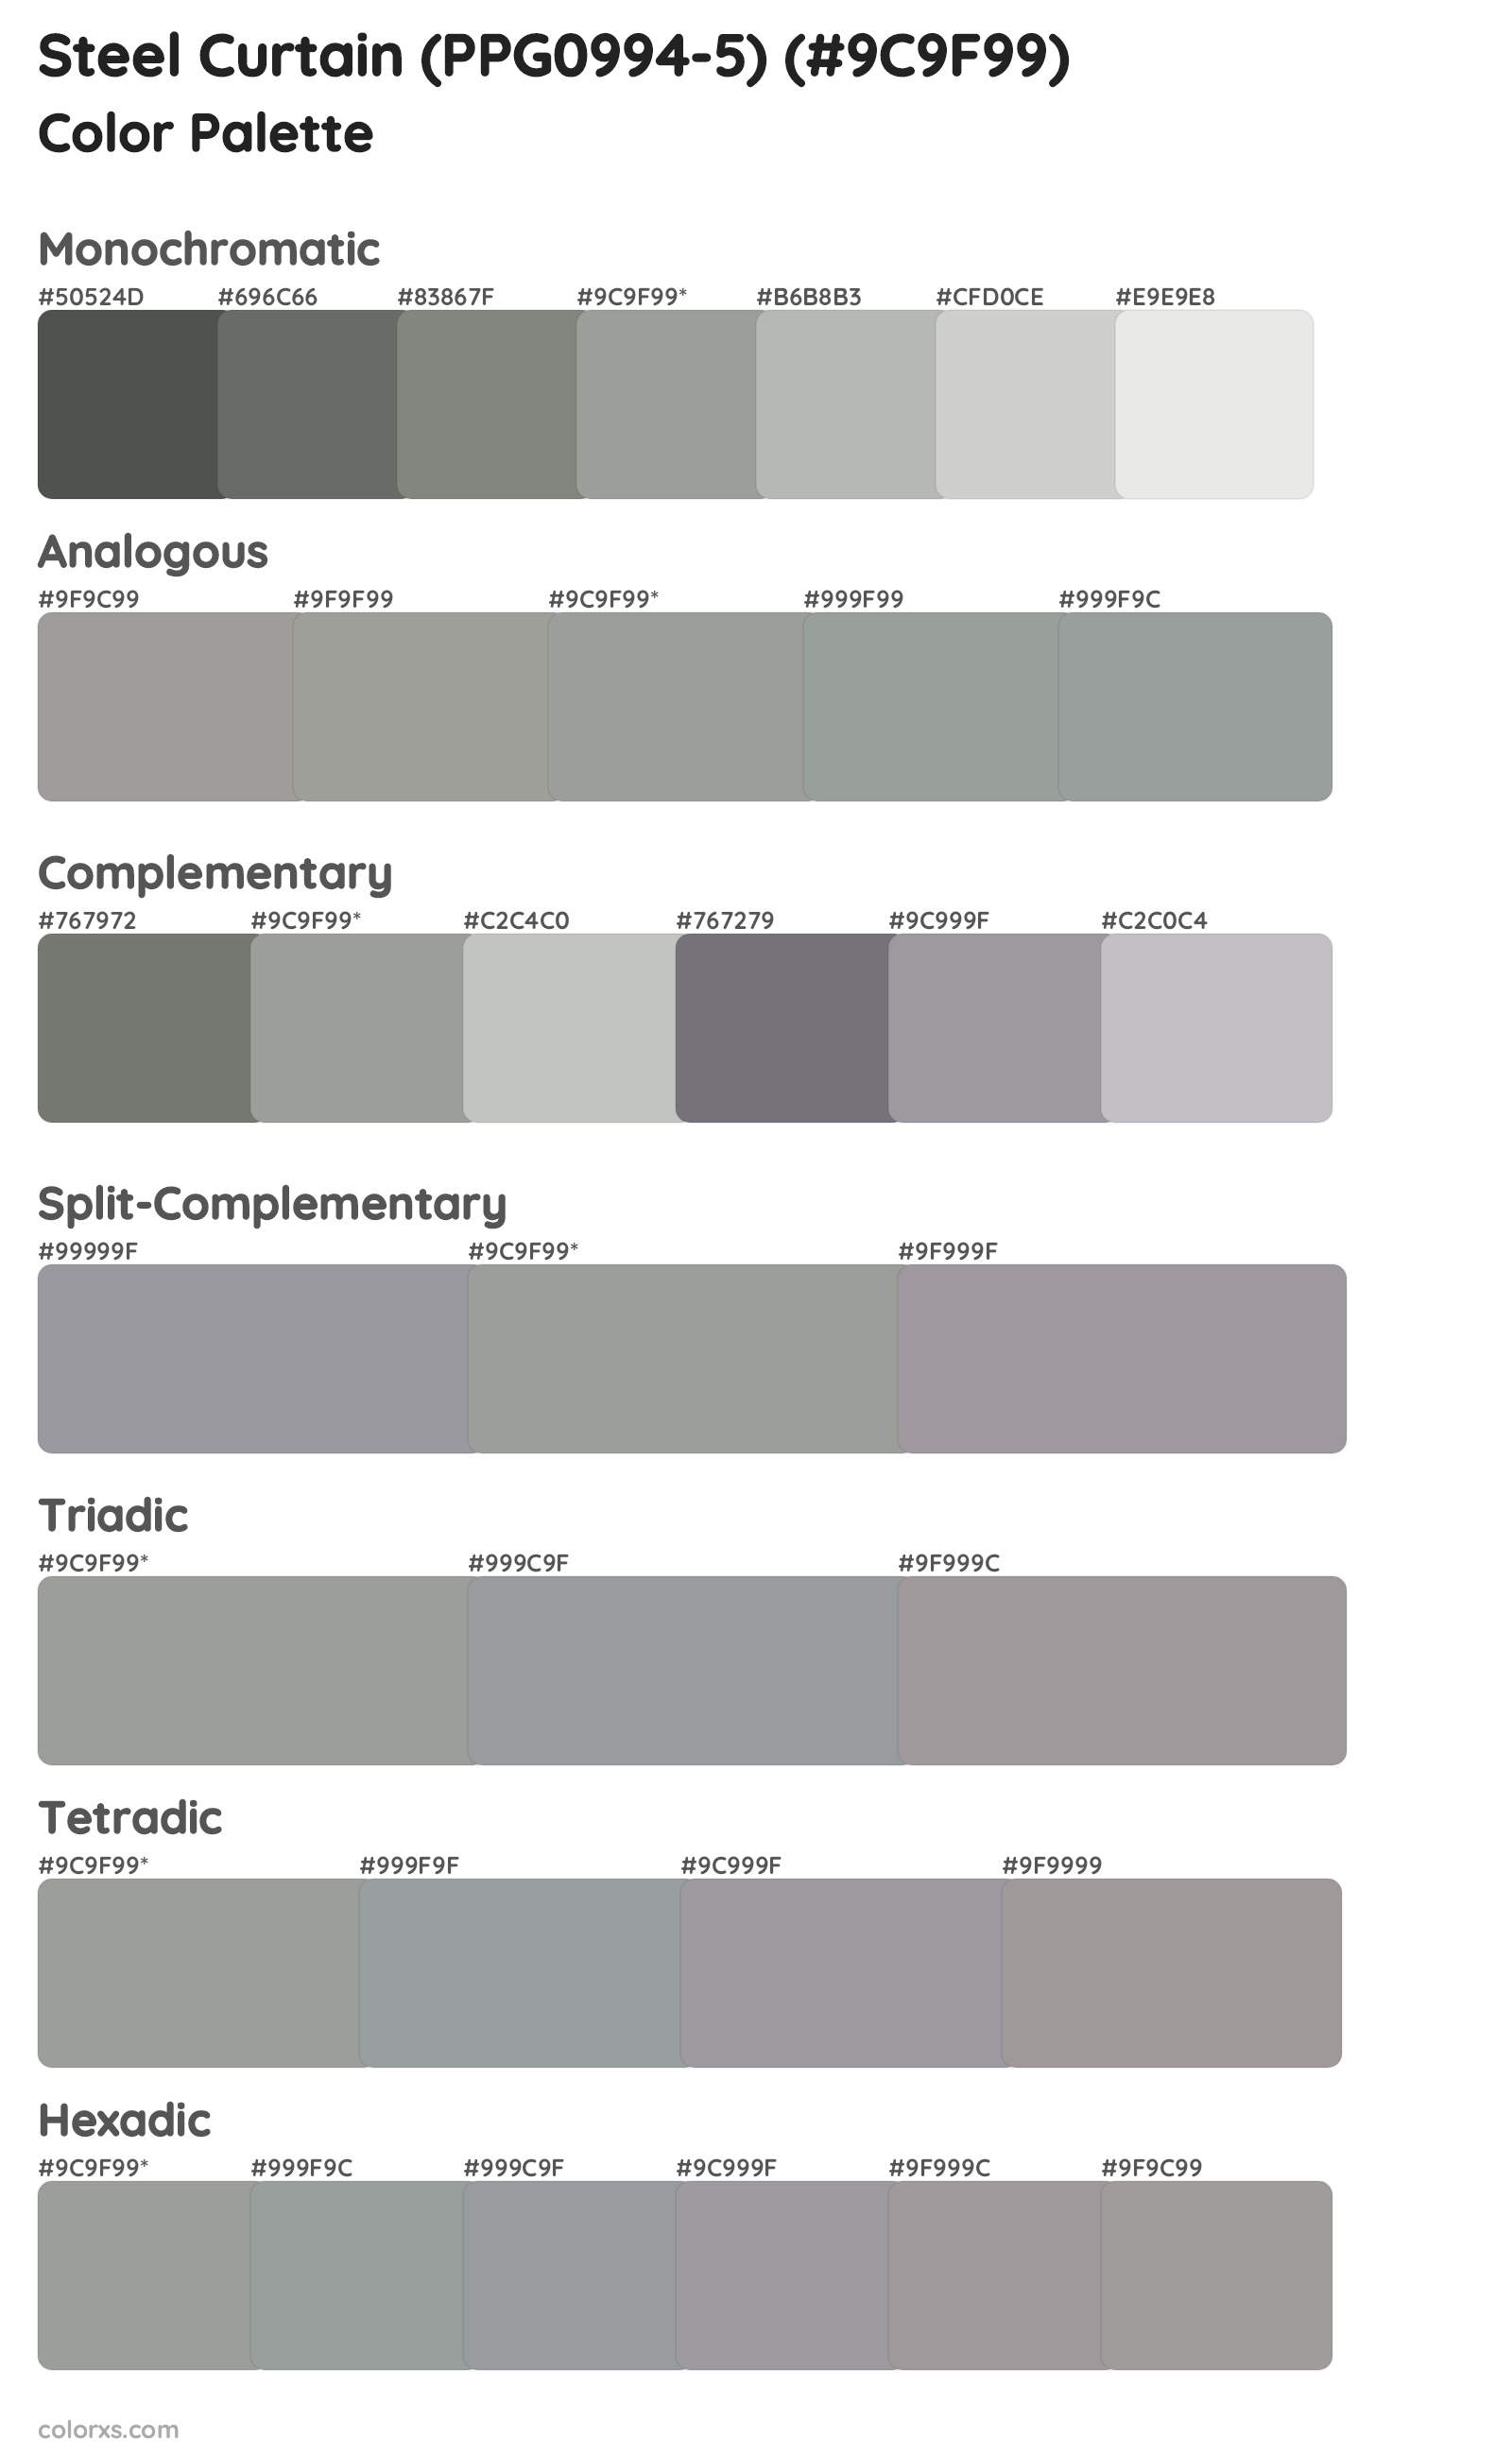 Steel Curtain (PPG0994-5) Color Scheme Palettes